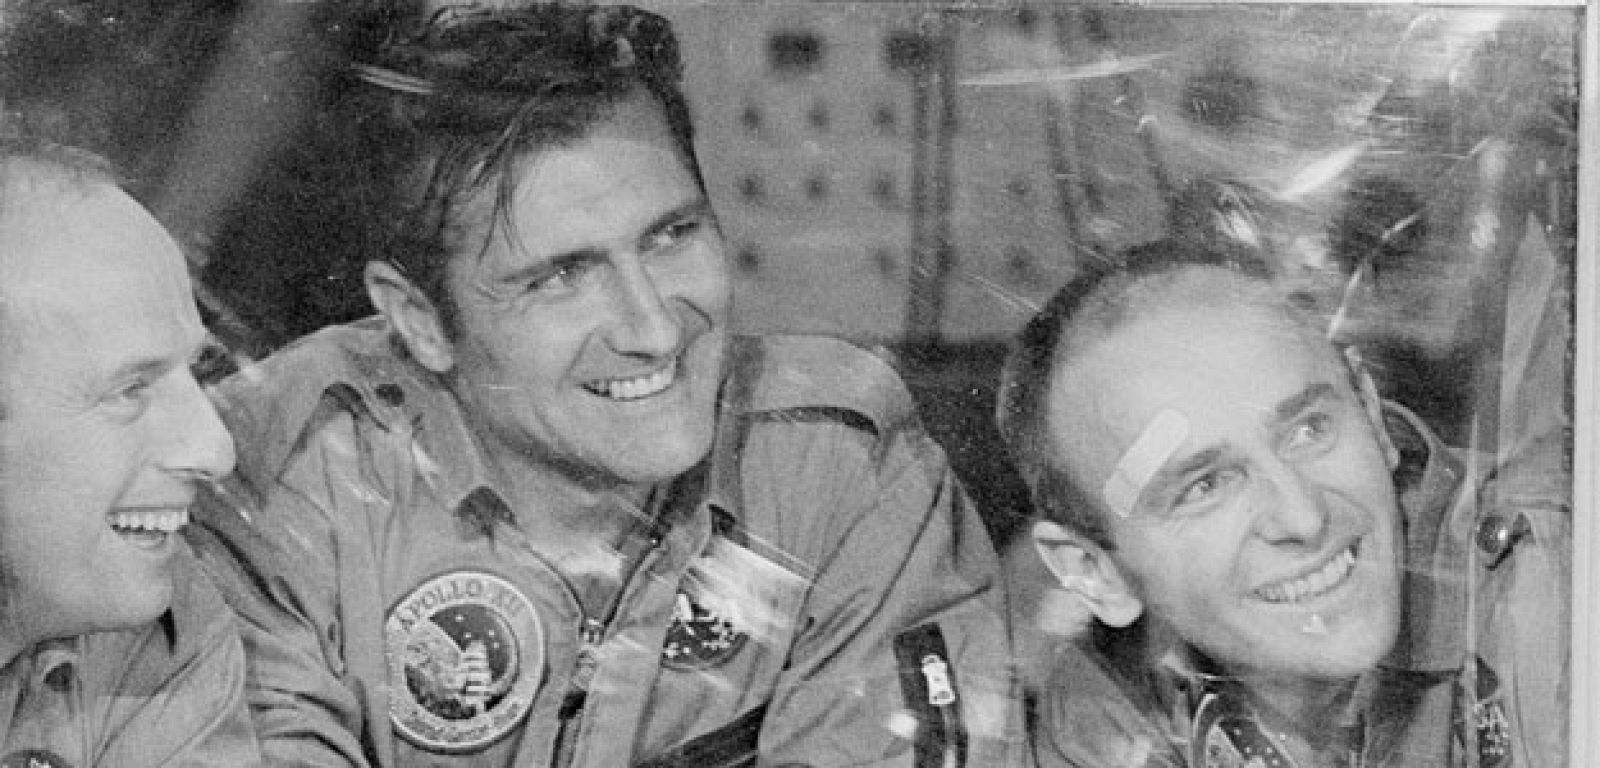 Richard F. Gordon (en el centro), comandante del Apolo 12 y piloto del módulo de mando de la misión.